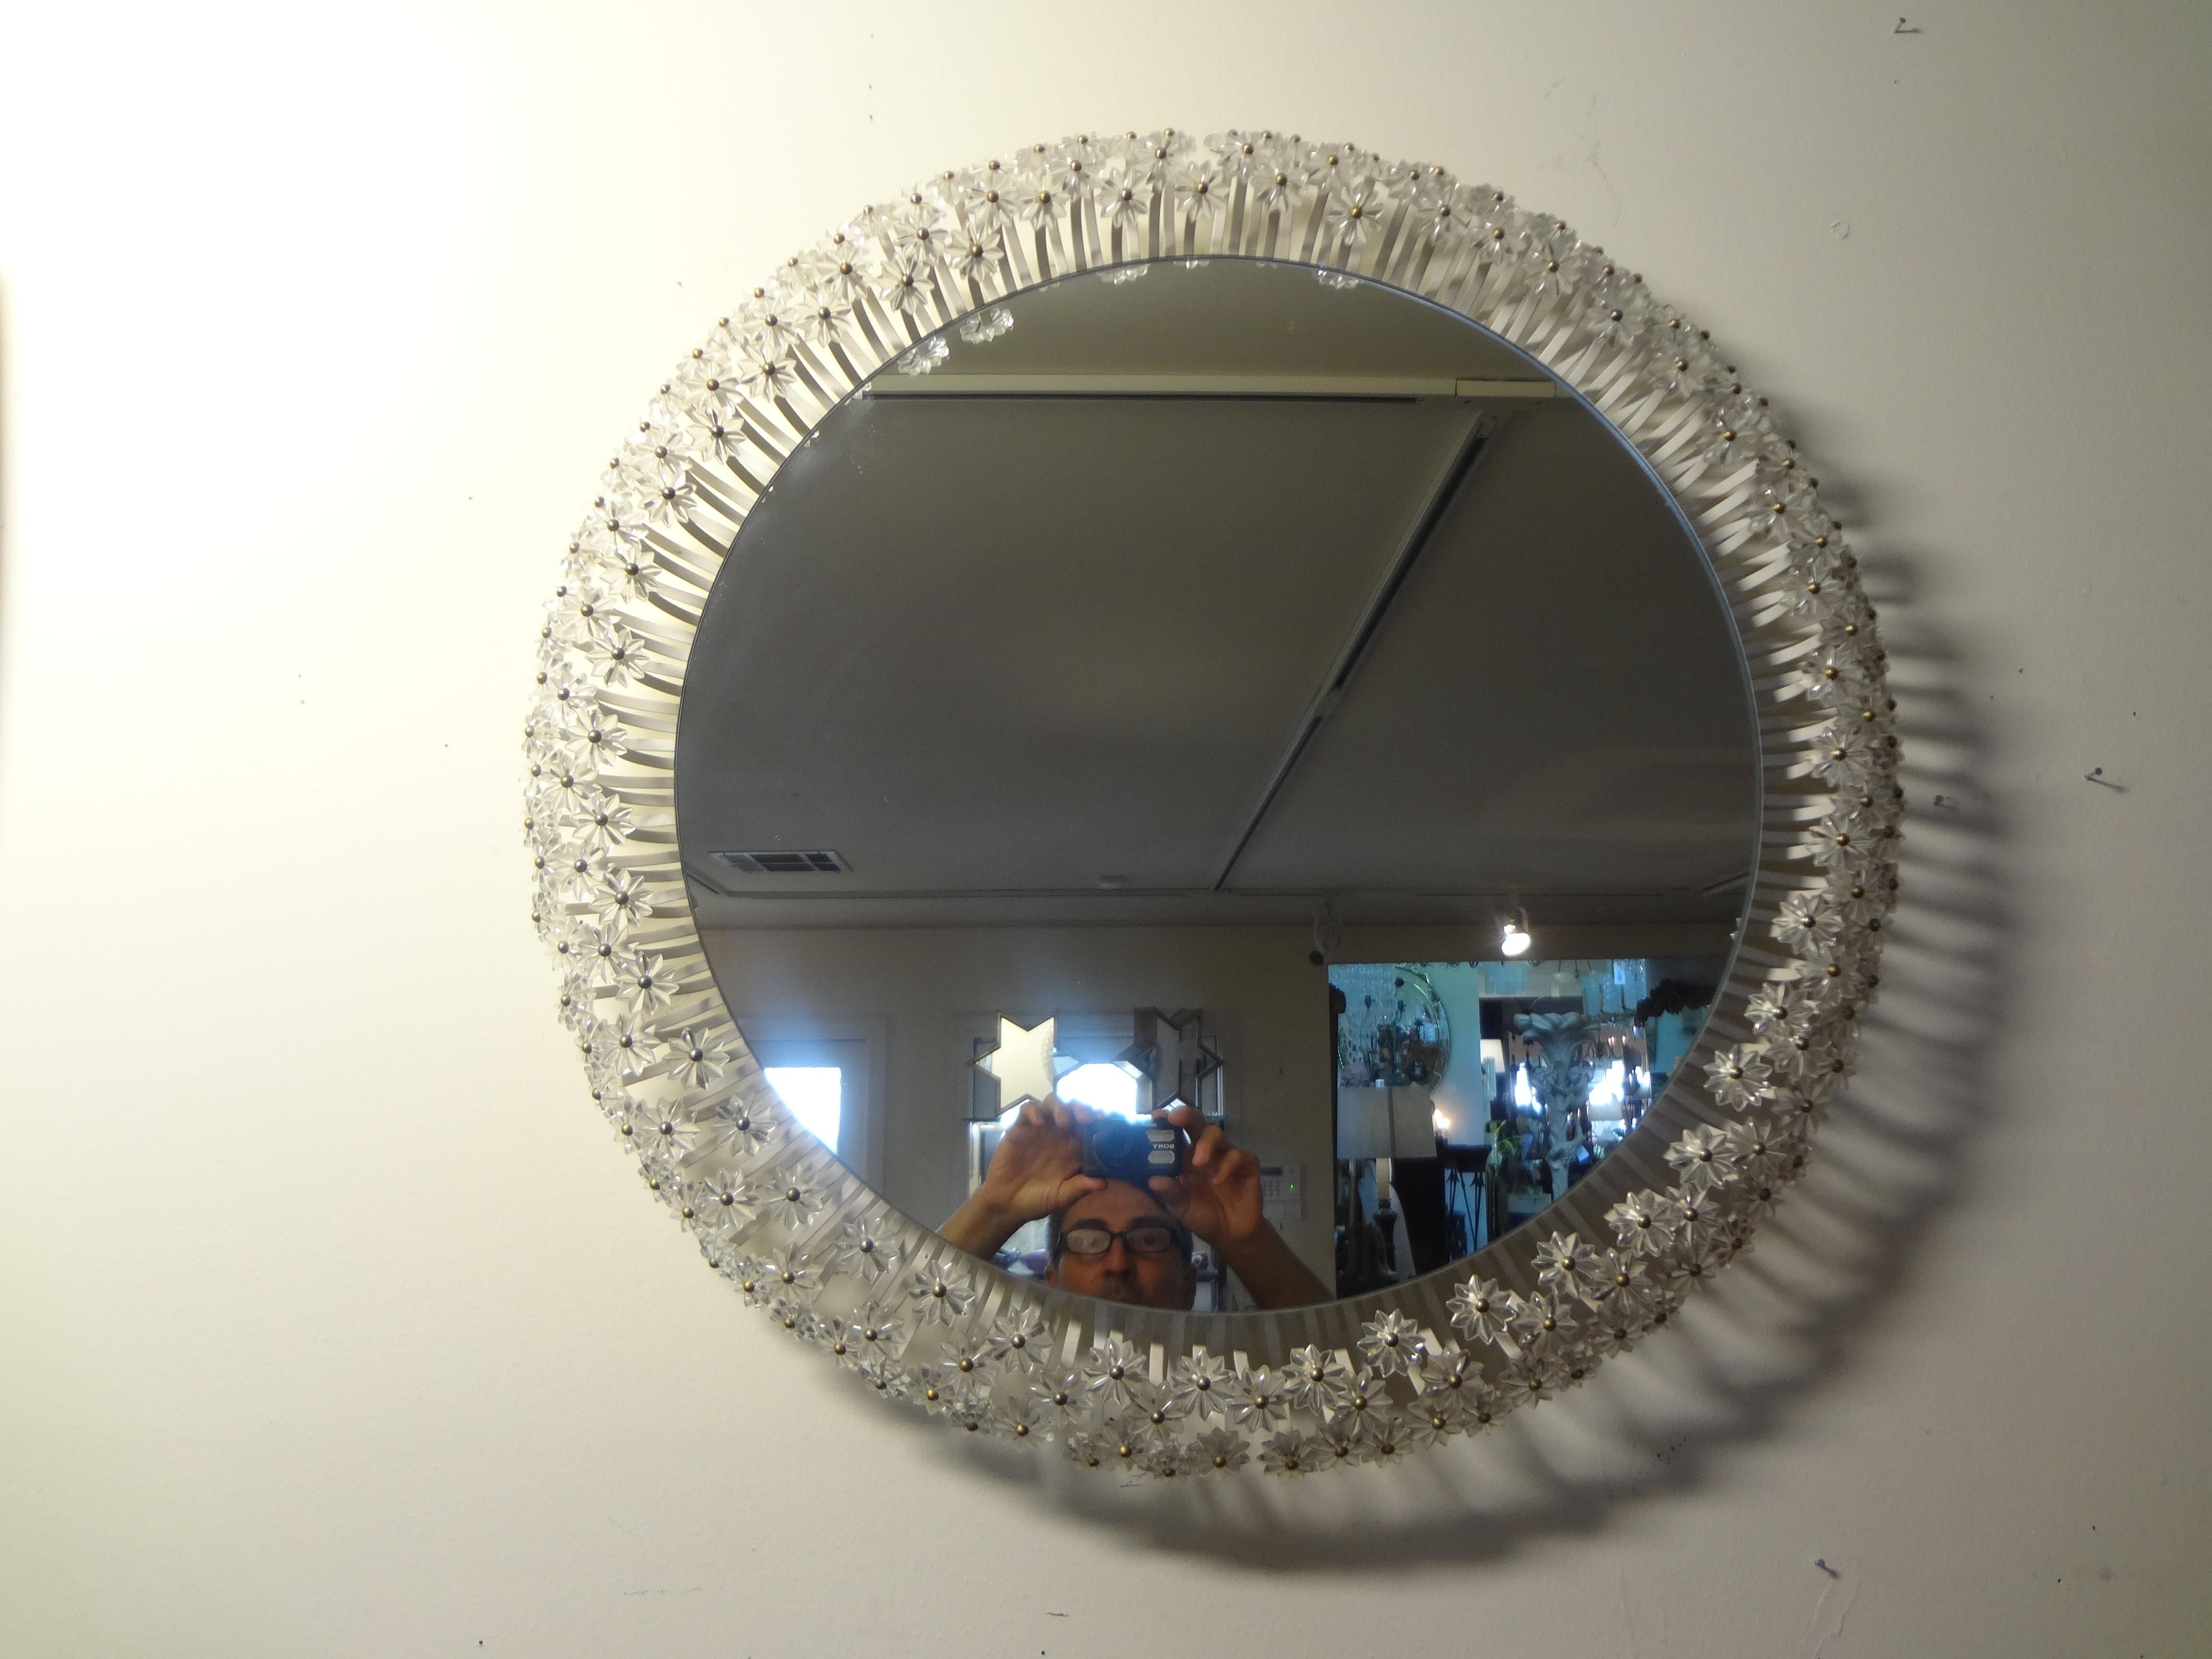 Wunderschöner runder österreichischer Spiegel von Emil Stejnar für Rupert Nikoll, ca. 1950er Jahre. Dieser ikonische Spiegel besteht aus einem Umfang von abgestuften Glasblumen mit Messingzentren und einem zentralen Spiegel. Dieser bezaubernde